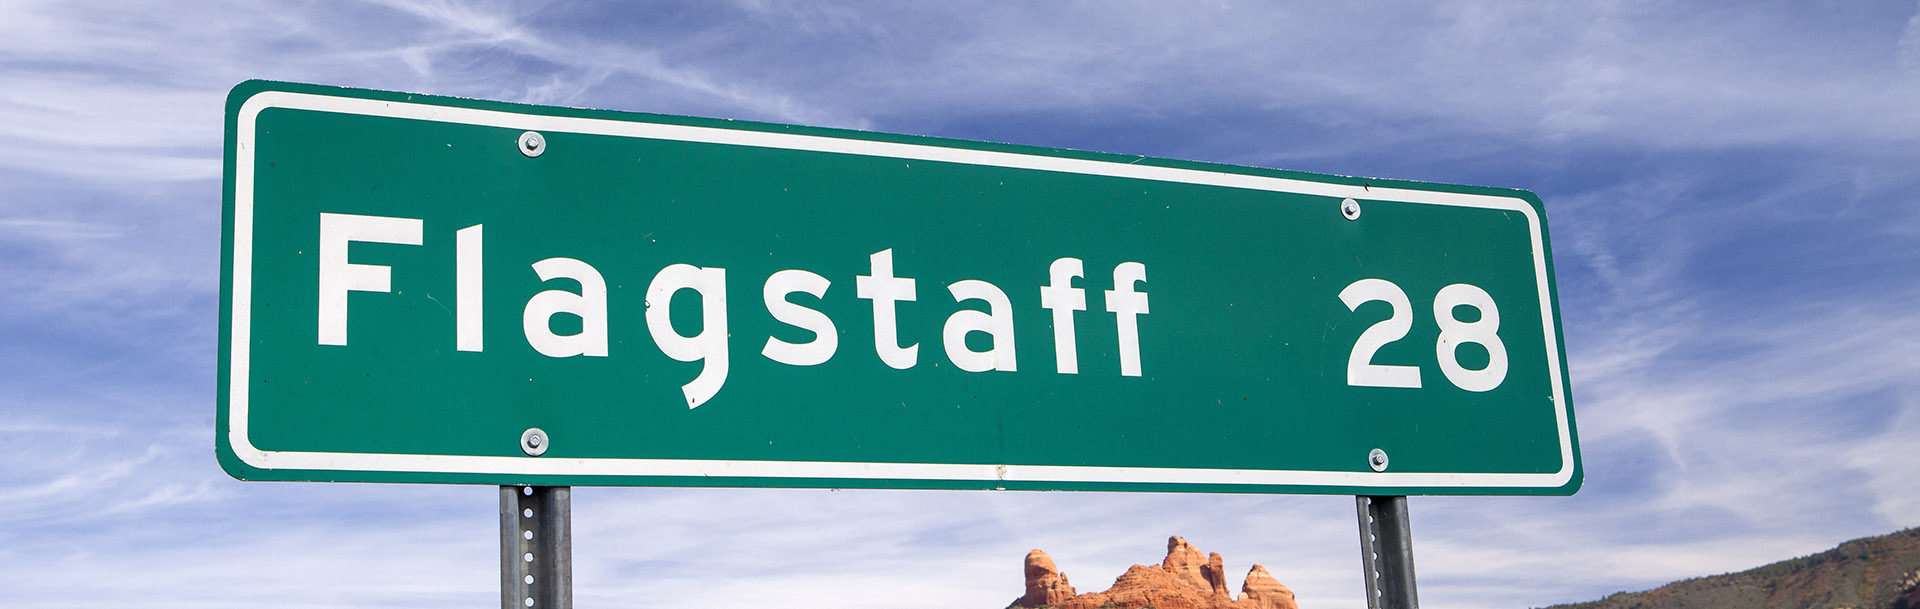 Flagstaff - Arizona